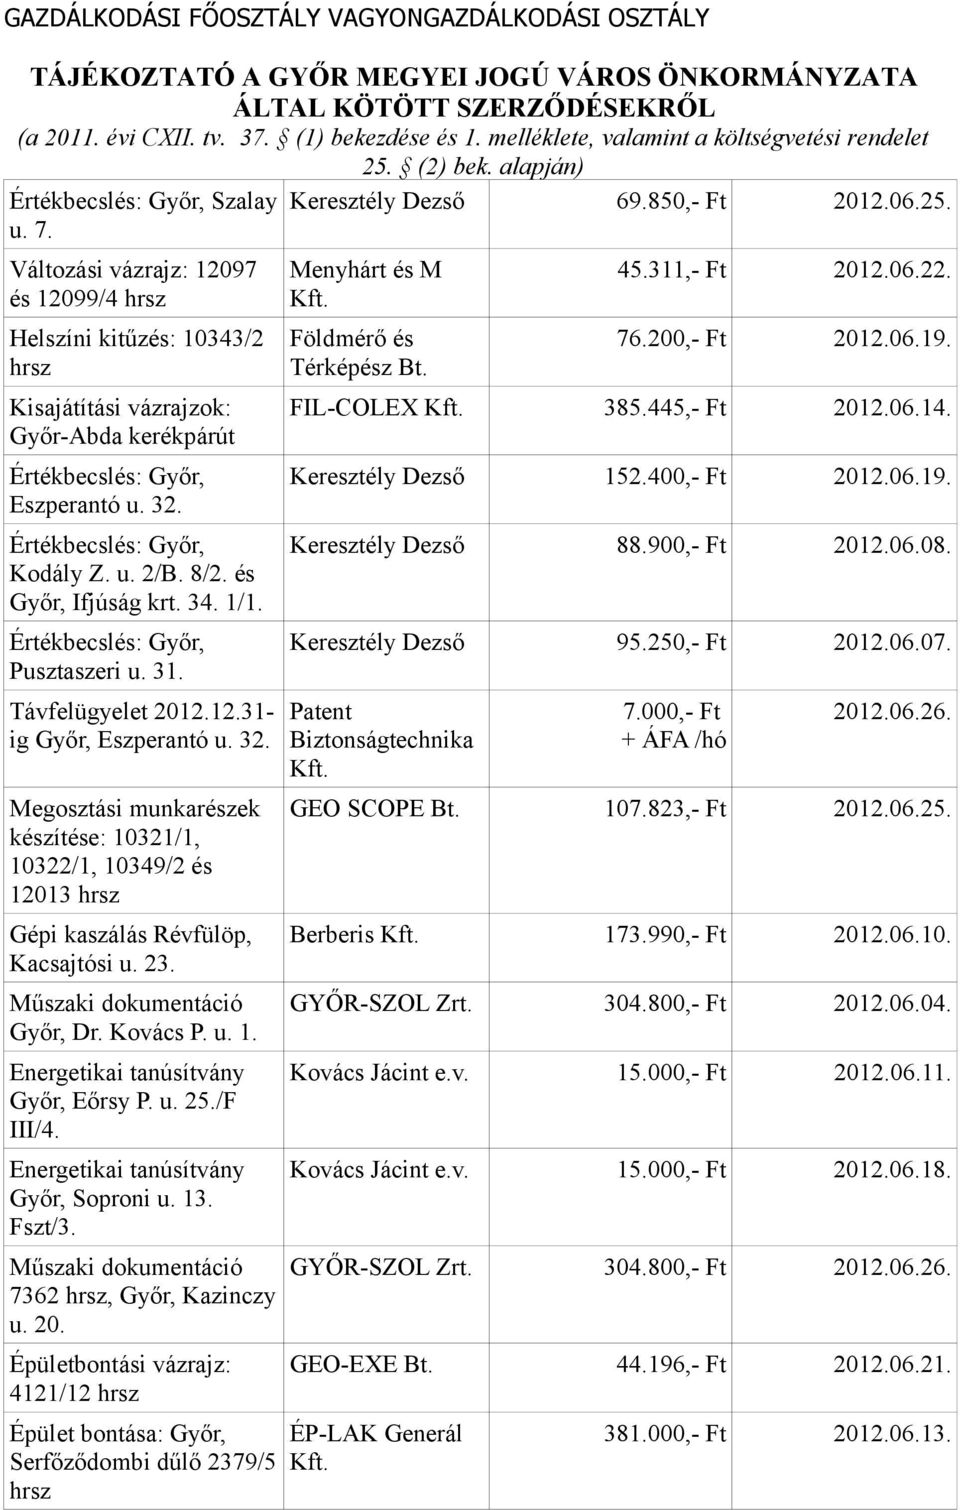 és Győr, Ifjúság krt. 34. 1/1. Értékbecslés: Győr, Pusztaszeri u. 31. Távfelügyelet 2012.12.31- ig Győr, Eszperantó u. 32.